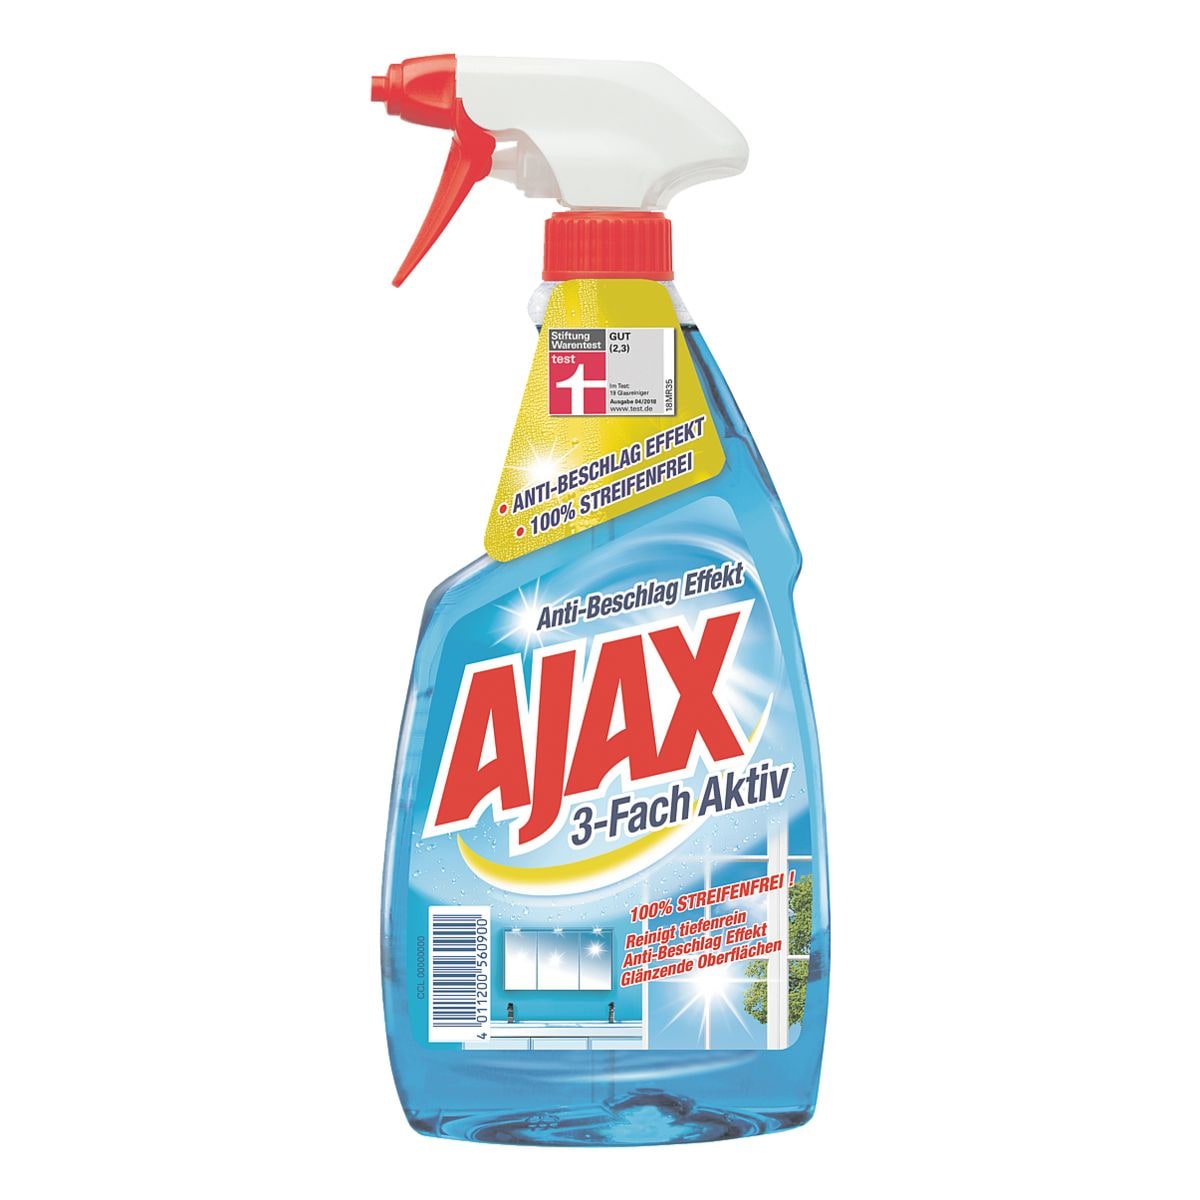 AJAX Glasreiniger / Flchenreiniger 3-Fach Aktiv inkl. Anti-Beschlag Effekt 500 ml